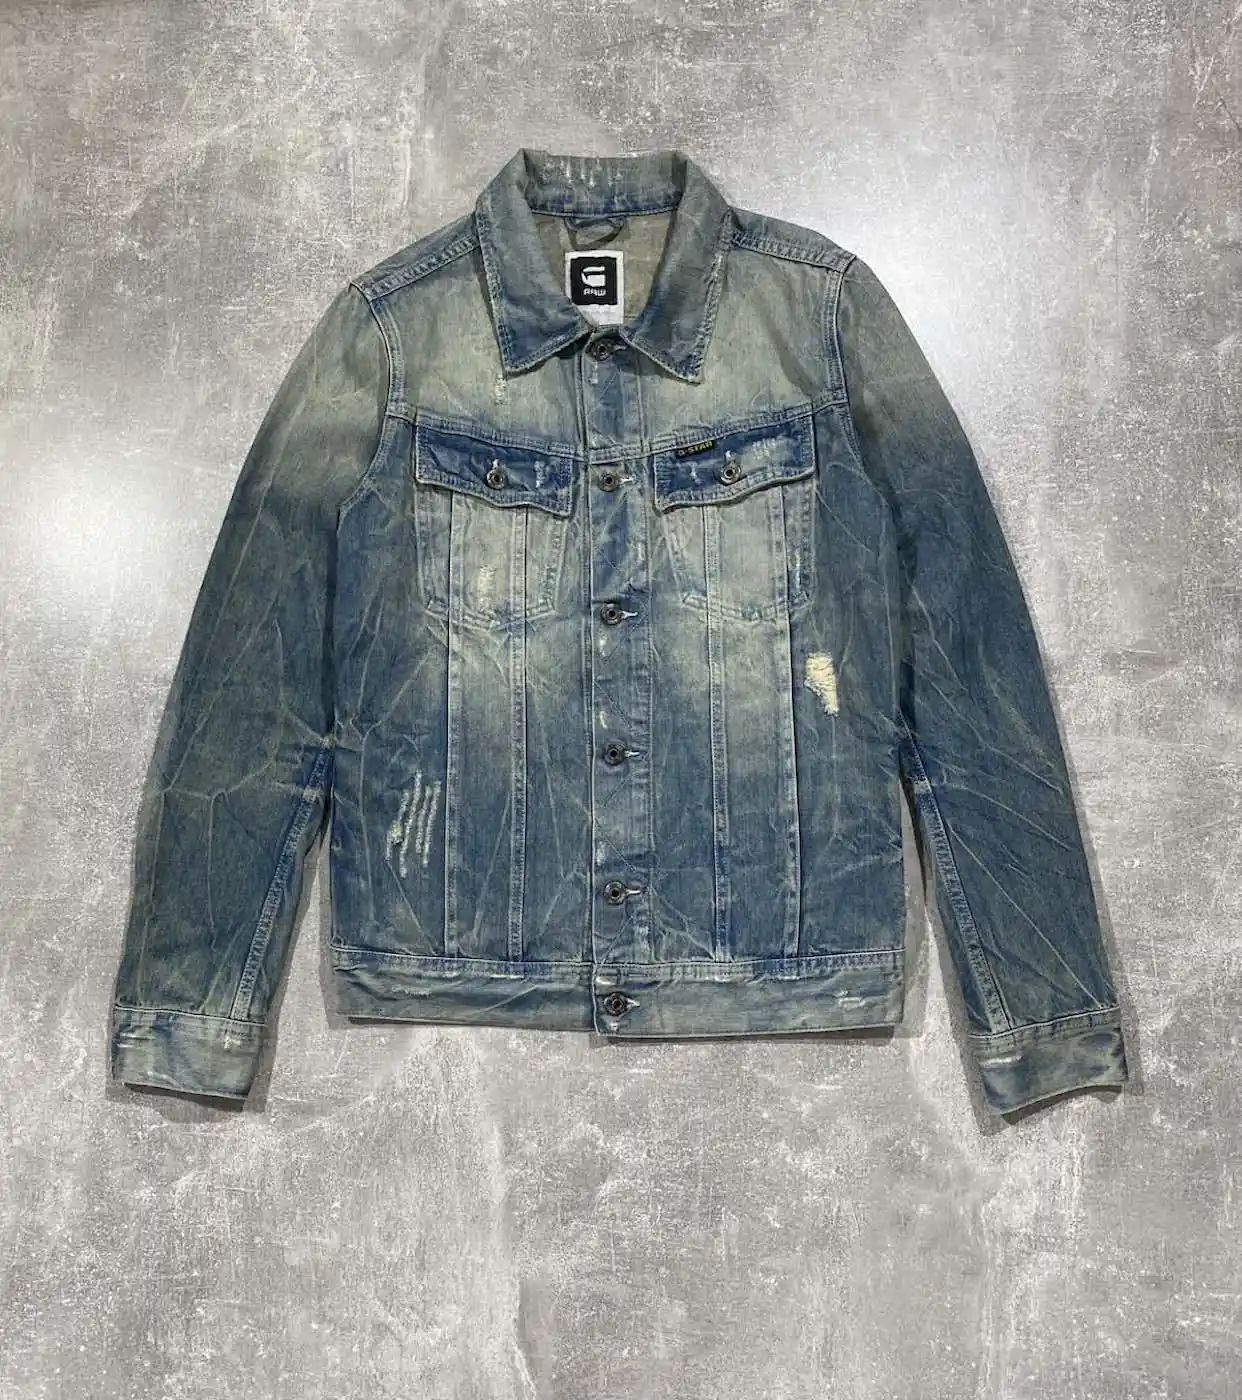 Pre-owned Avant Garde Vintage G-star Distressed Denim Washed Jacket